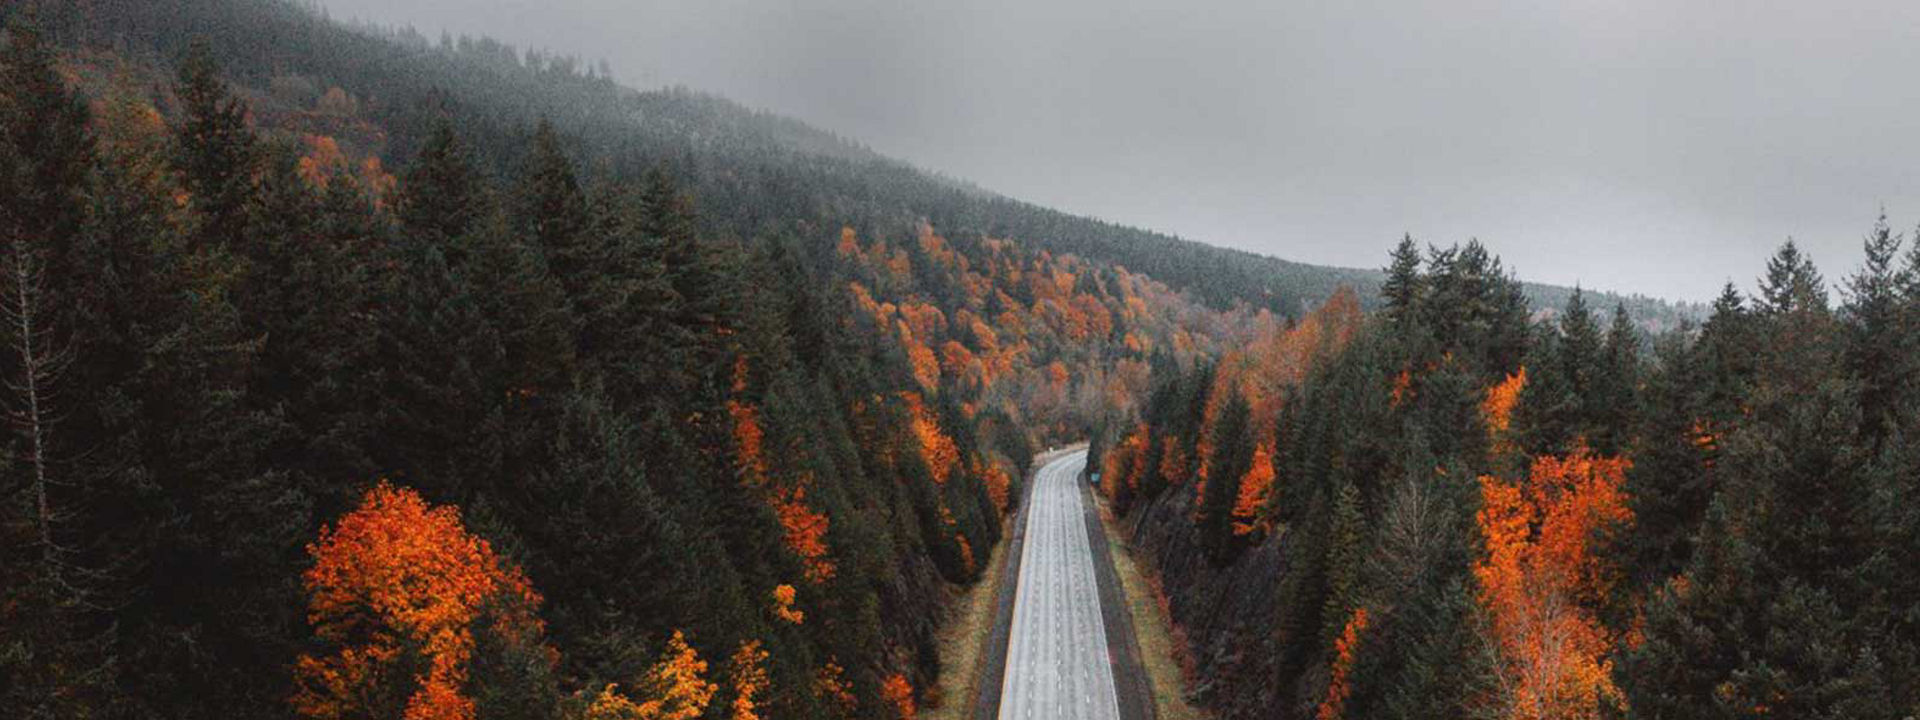 Dieses Bild einer leeren Autobahn in einem herbstlichen Wald zeigt, dass der Weather Control für jede Jahreszeit geeignet ist